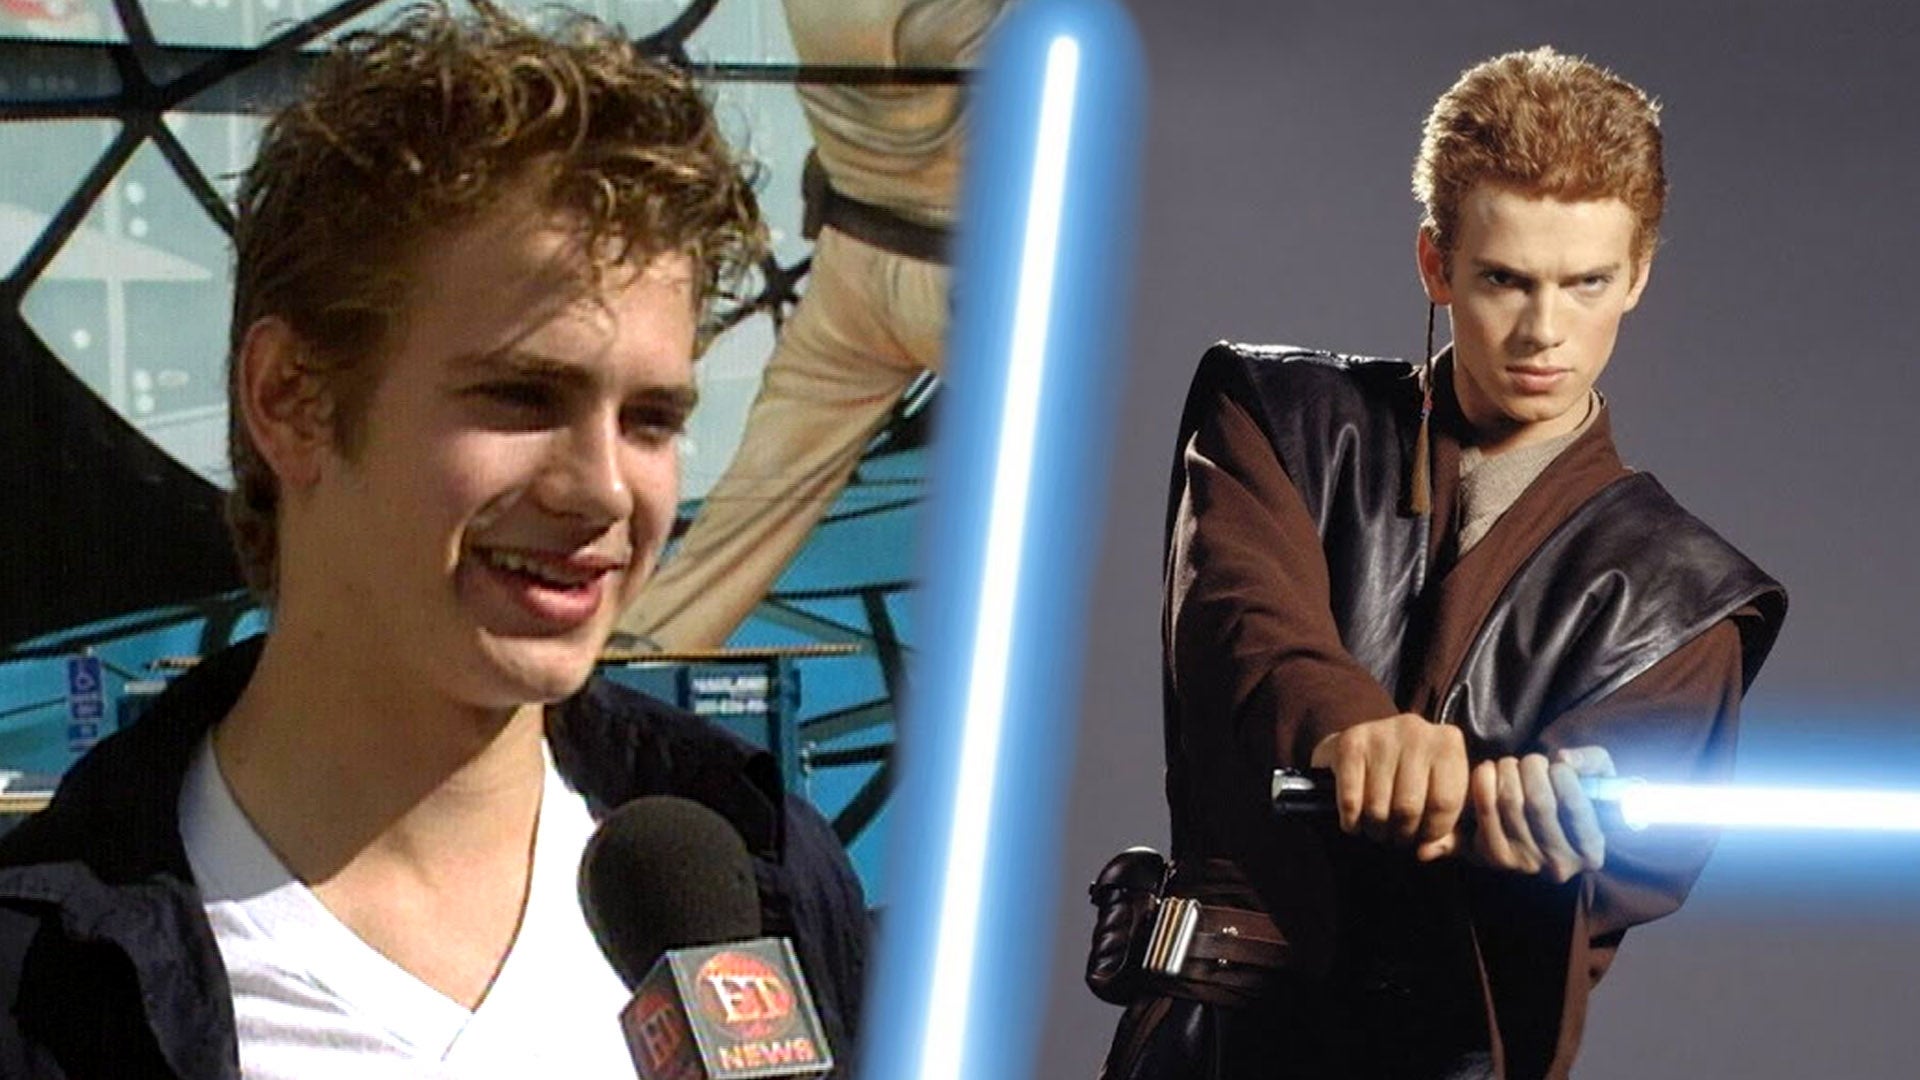 'Star Wars': Watch Hayden Christensen's First Interview About Anakin Skywalker (Flashback)